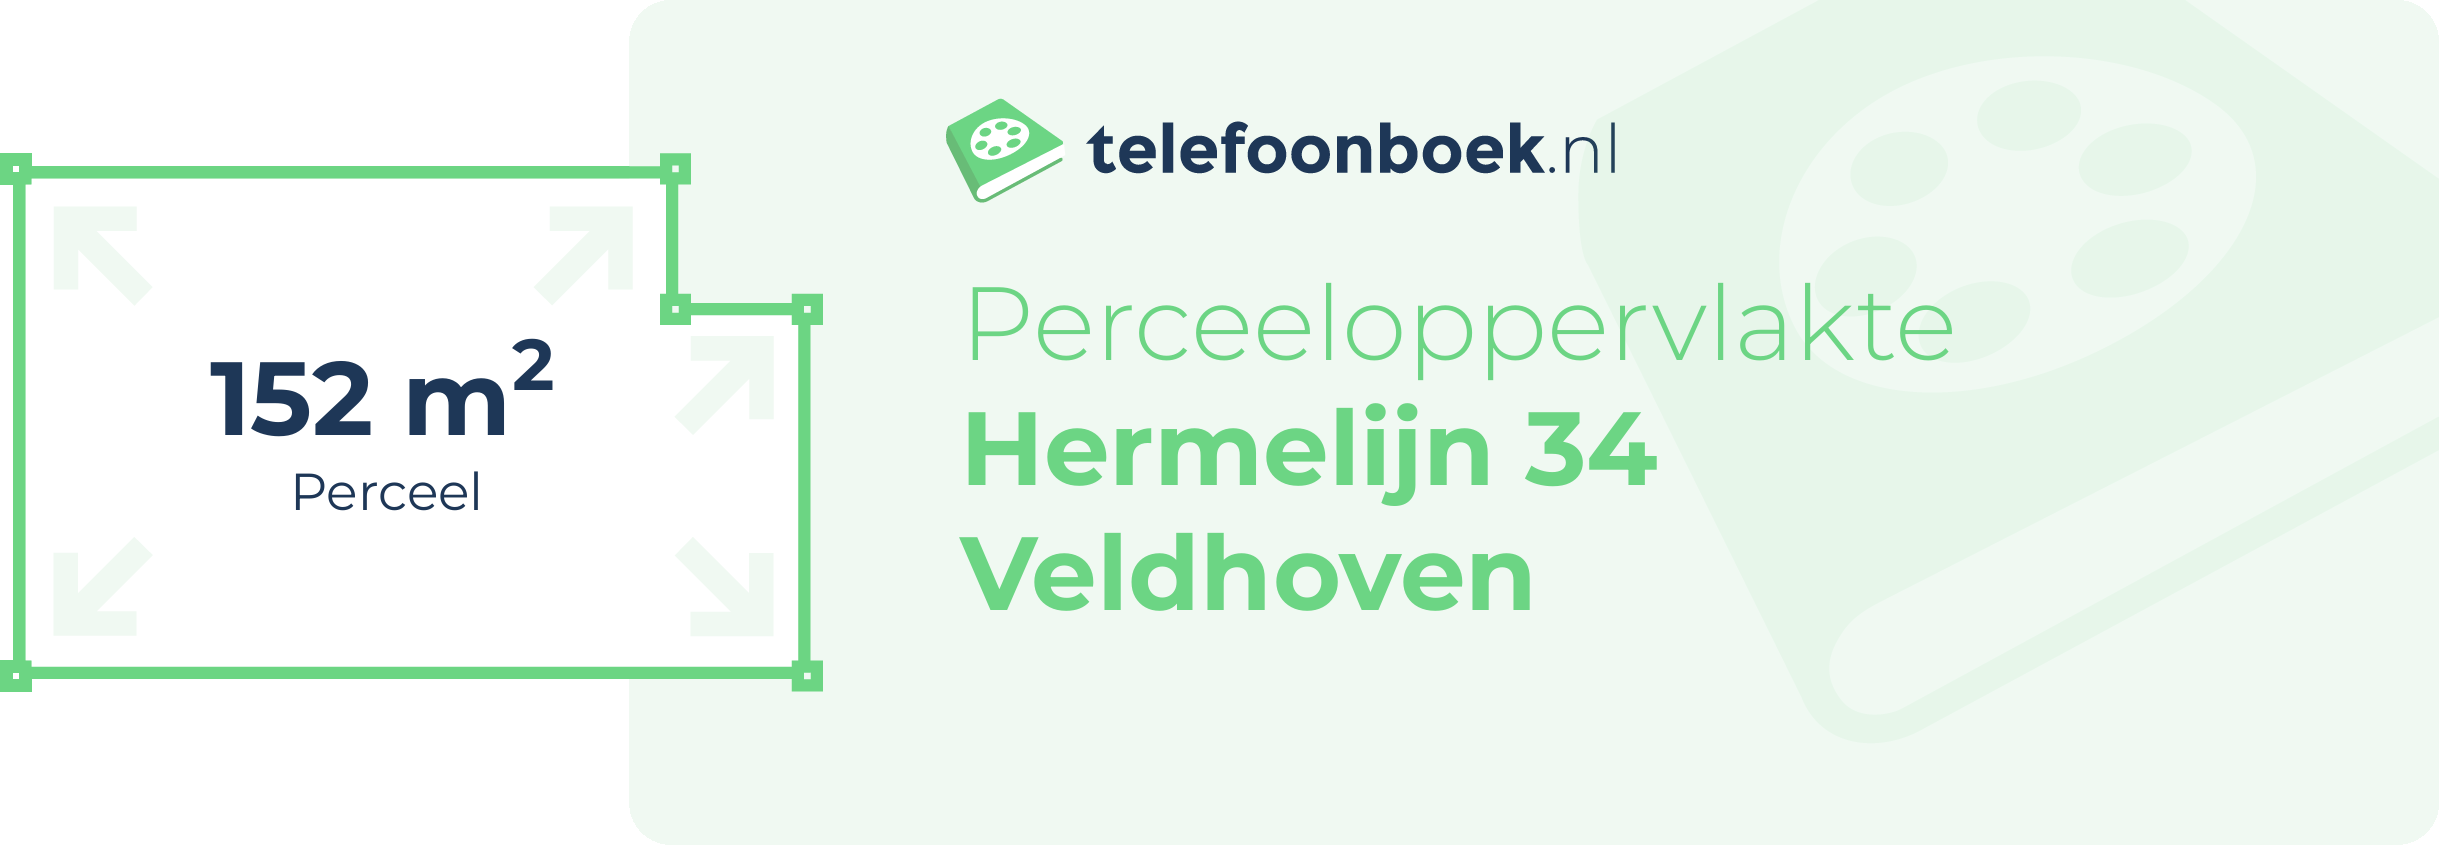 Perceeloppervlakte Hermelijn 34 Veldhoven